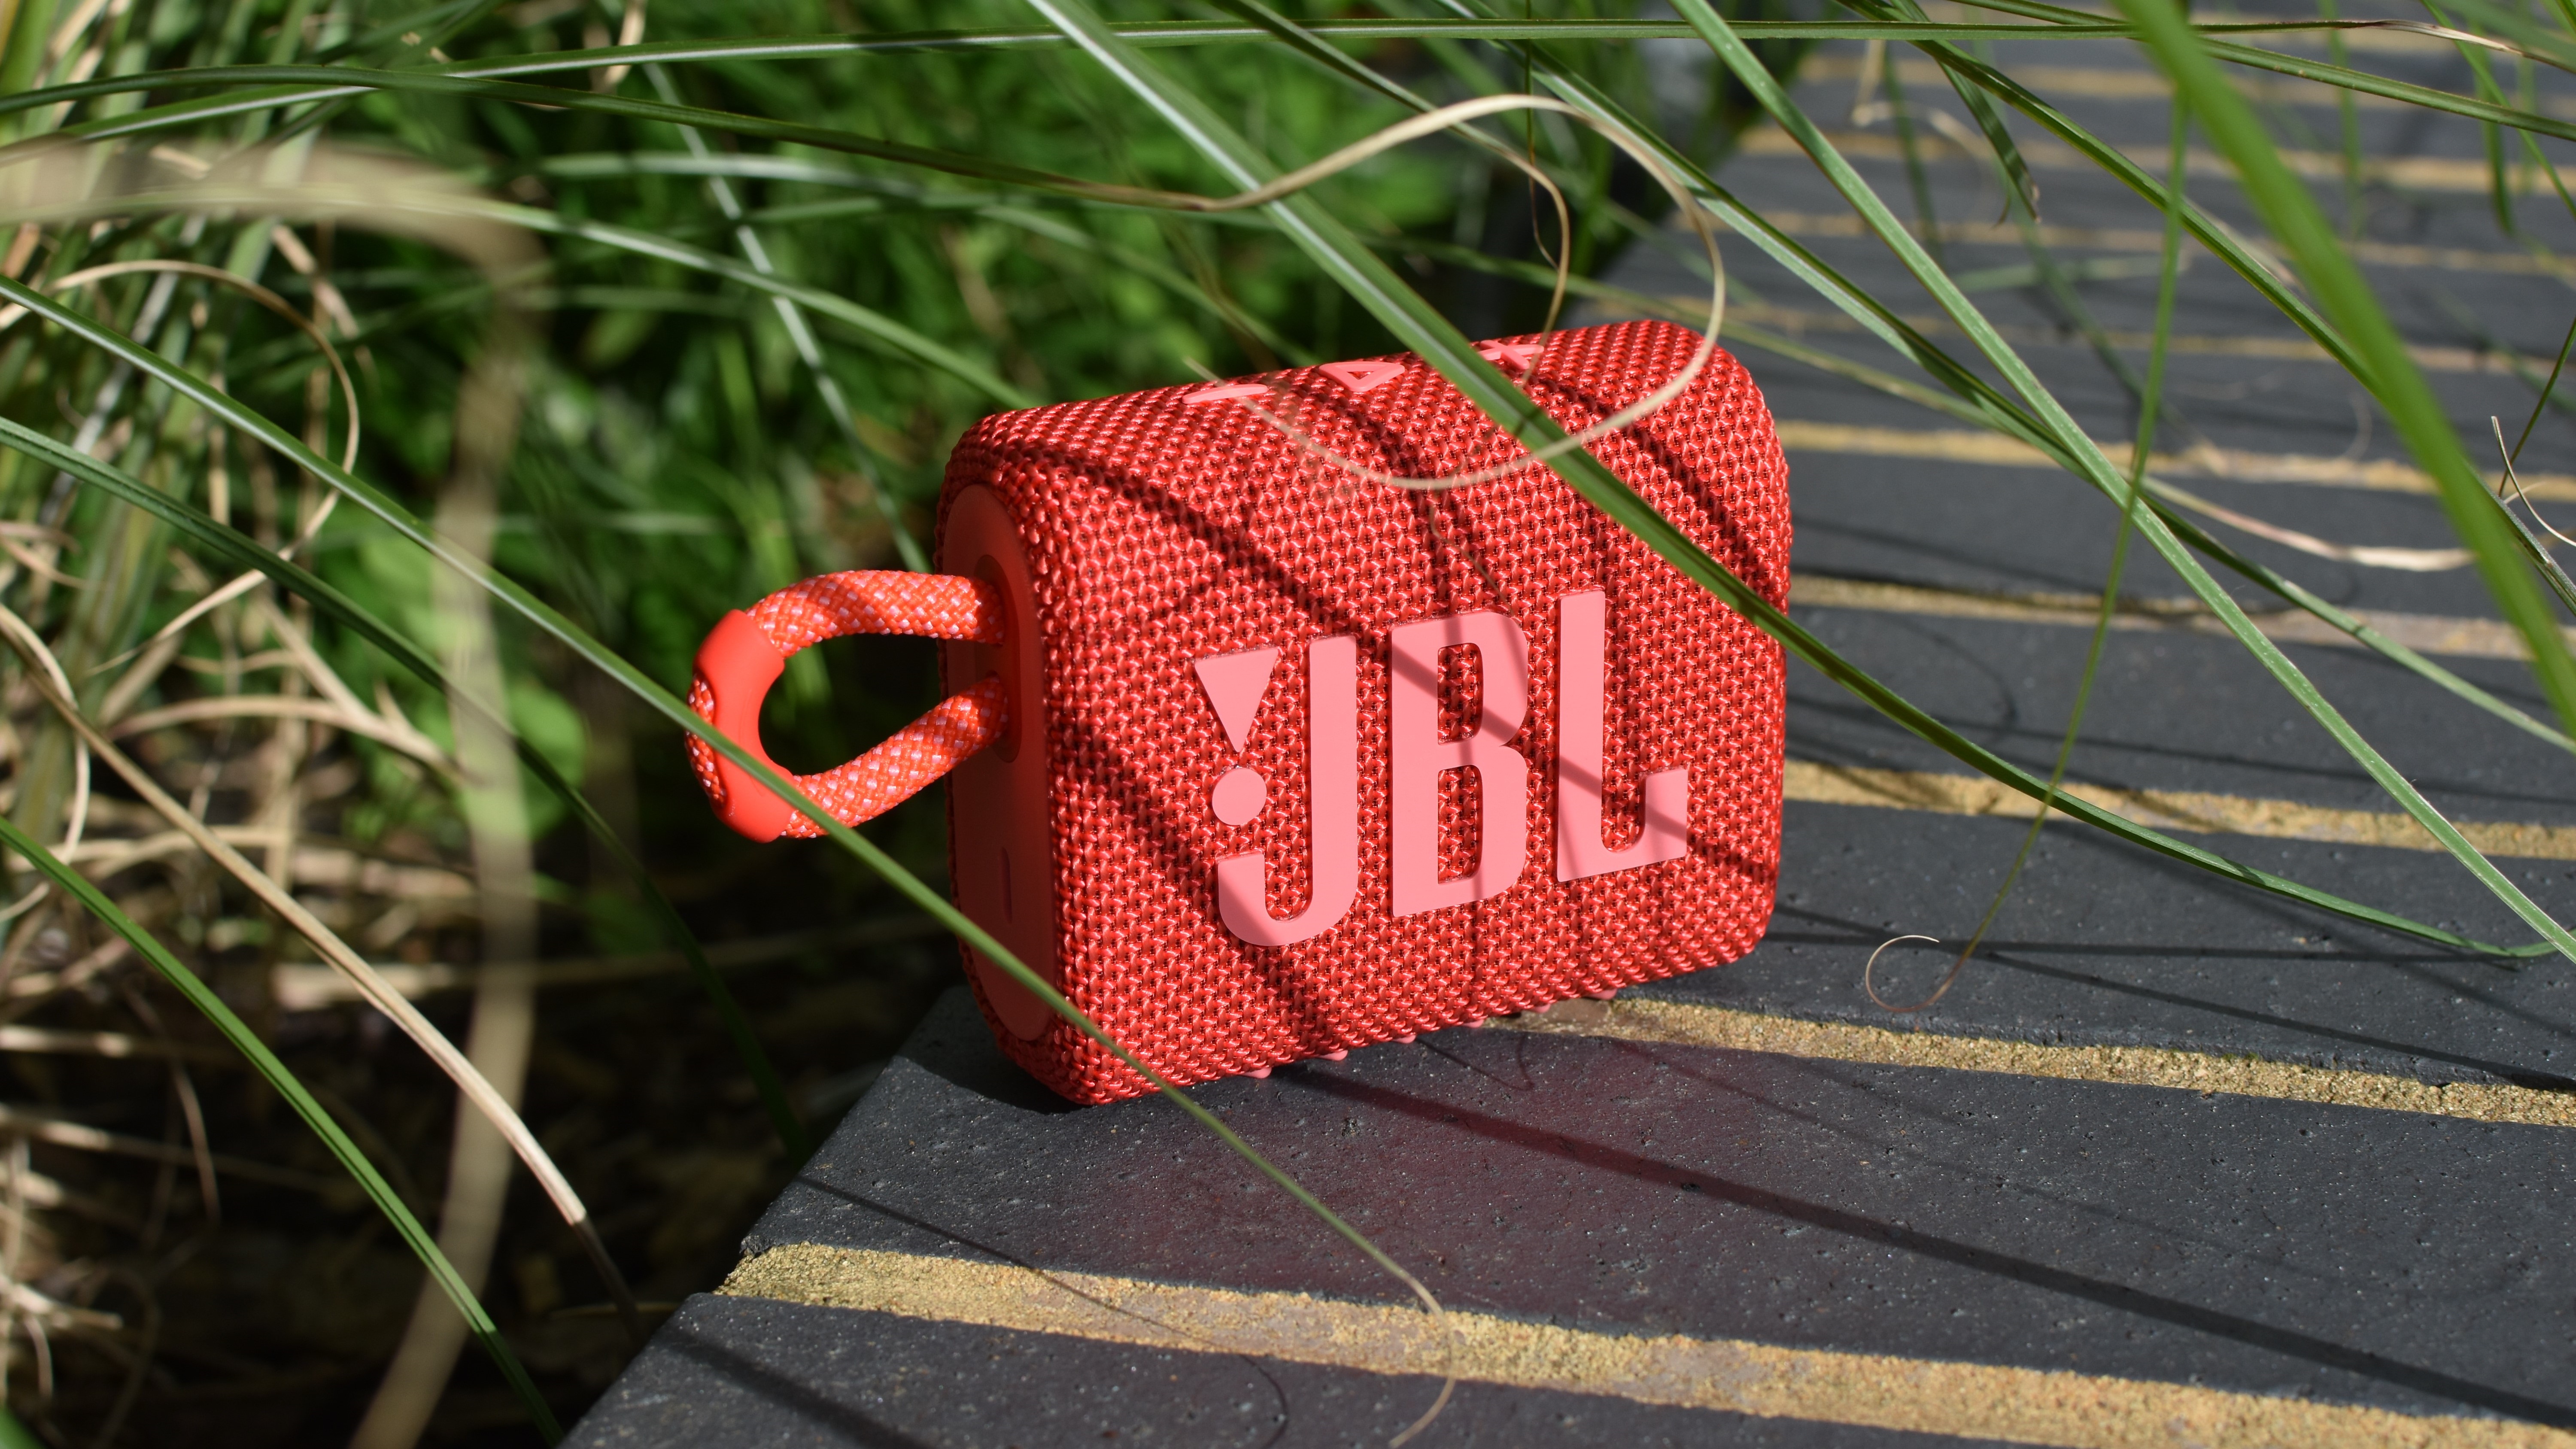 Best outdoor speakers: JBL Go 3